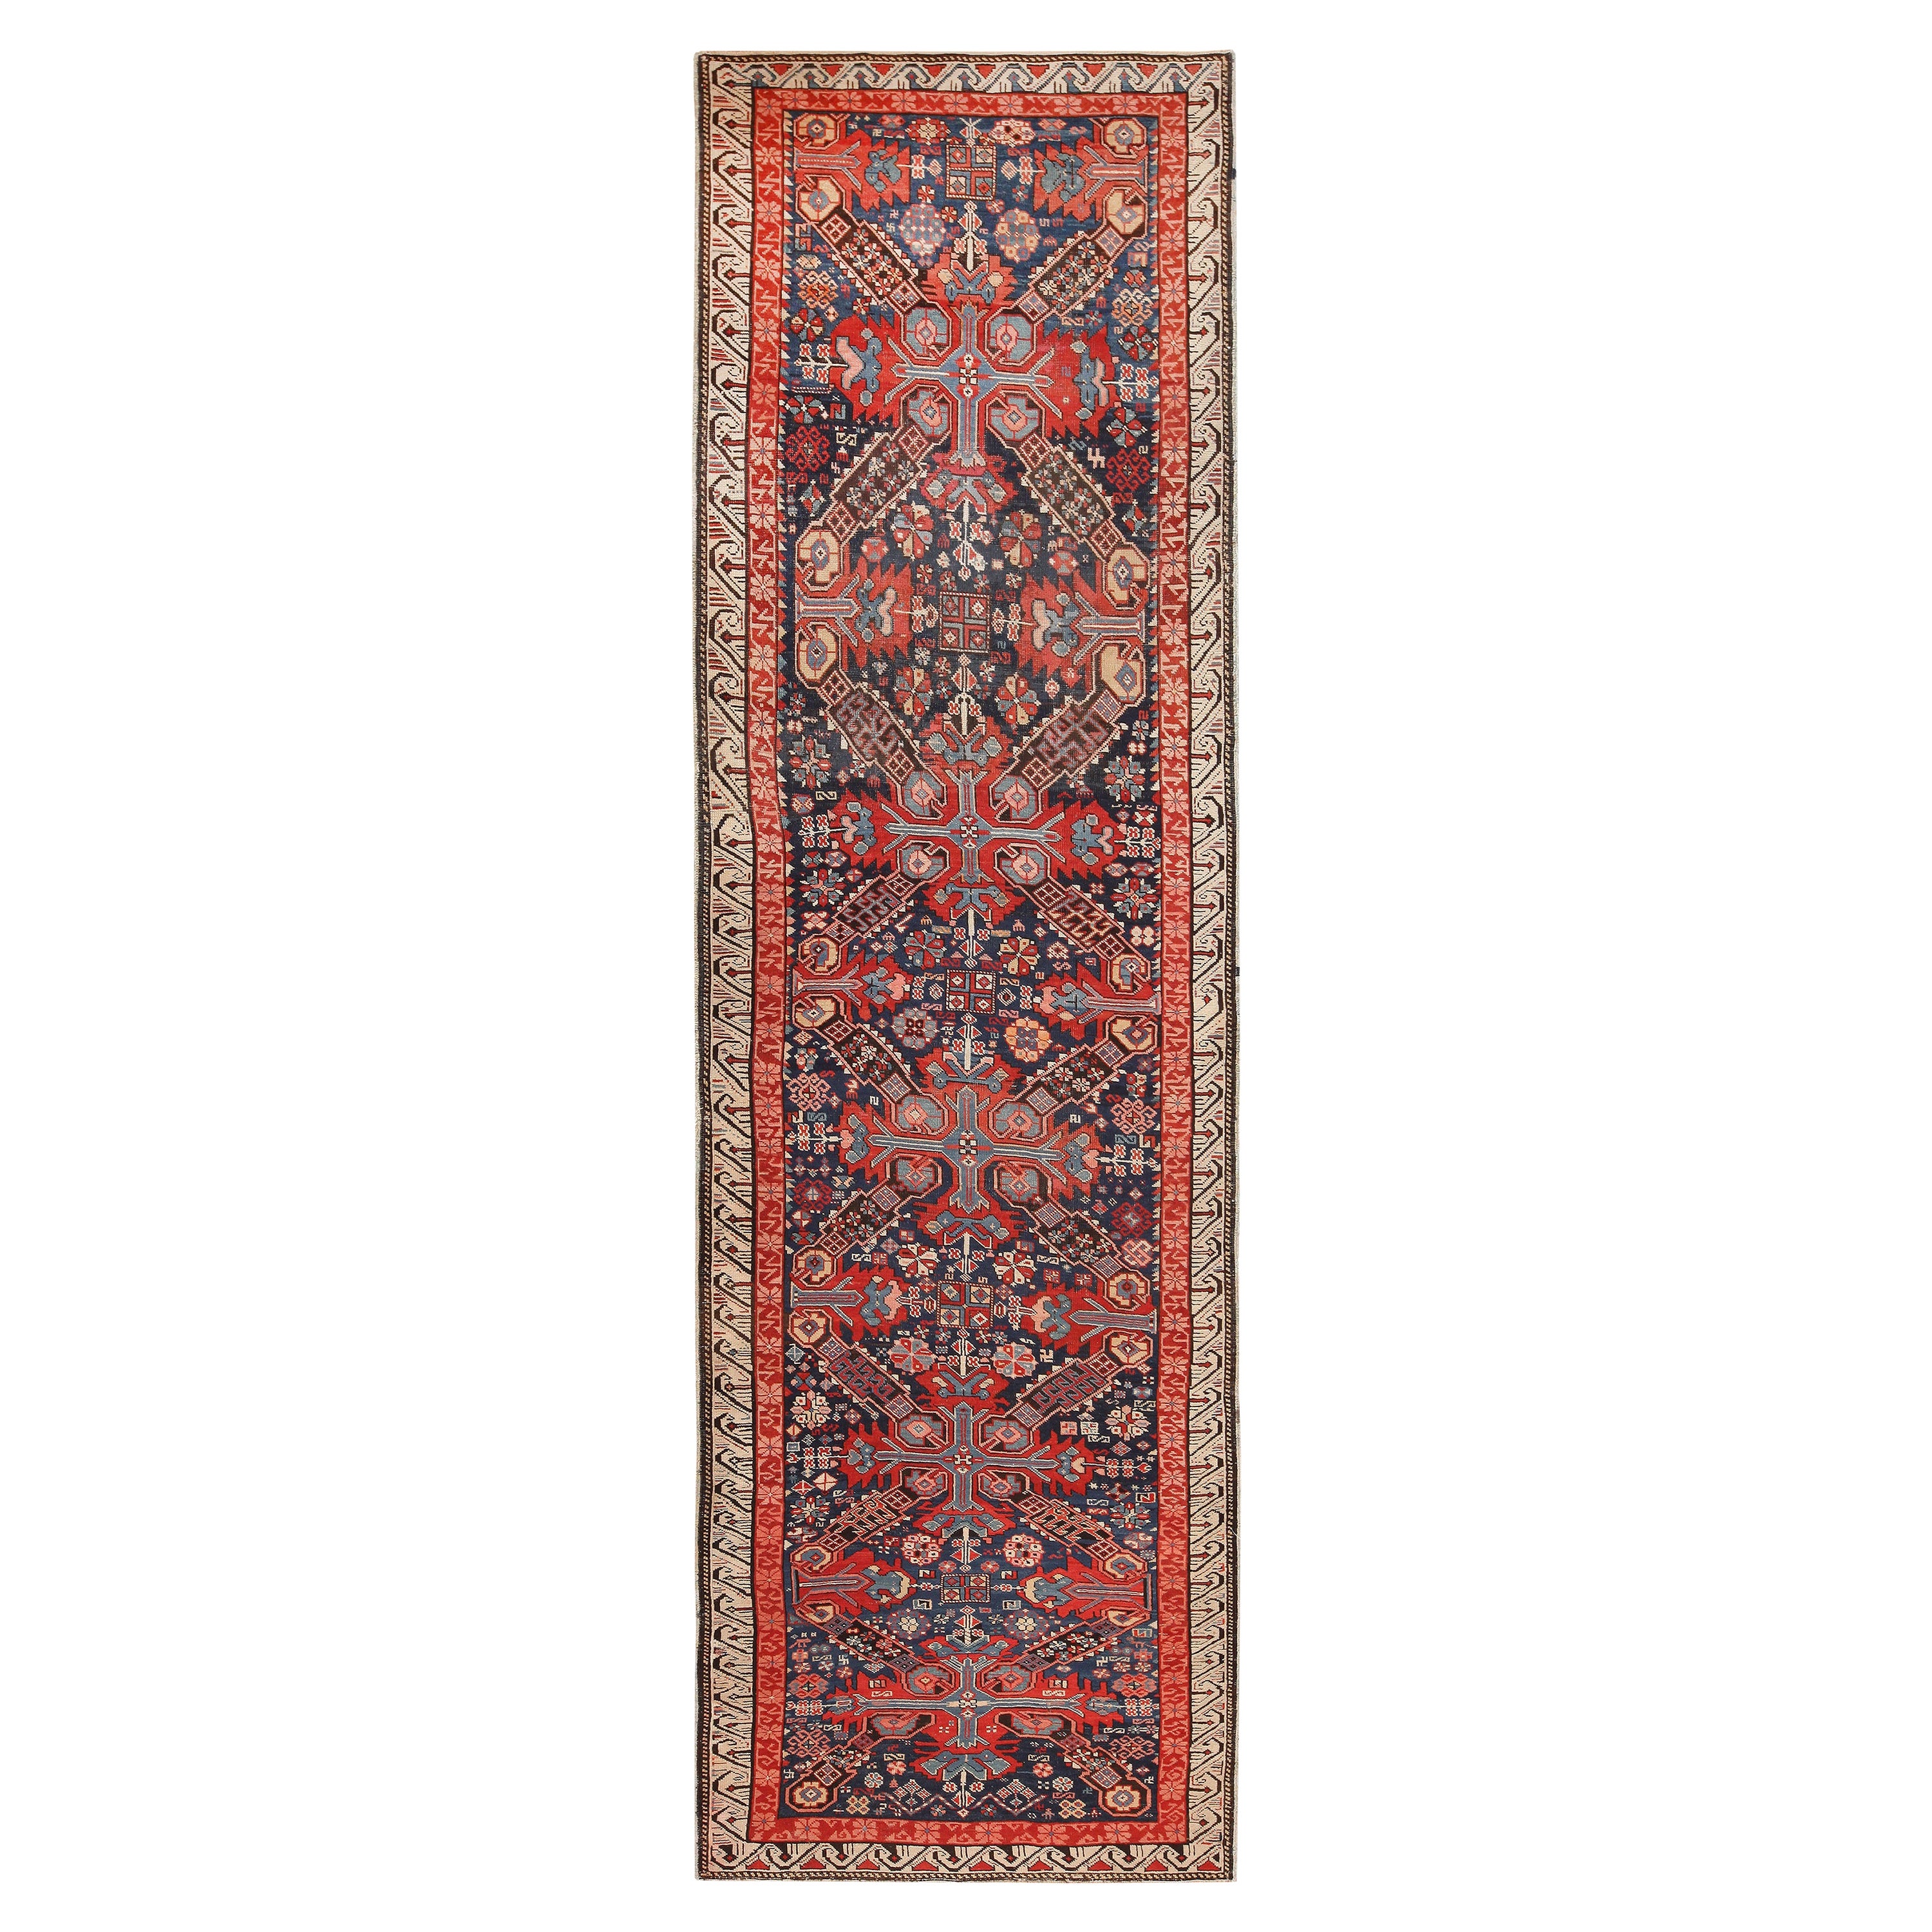 Schöner antiker kaukasischer Stammeskunst-Teppich auf Seychour 3'6" x 11'